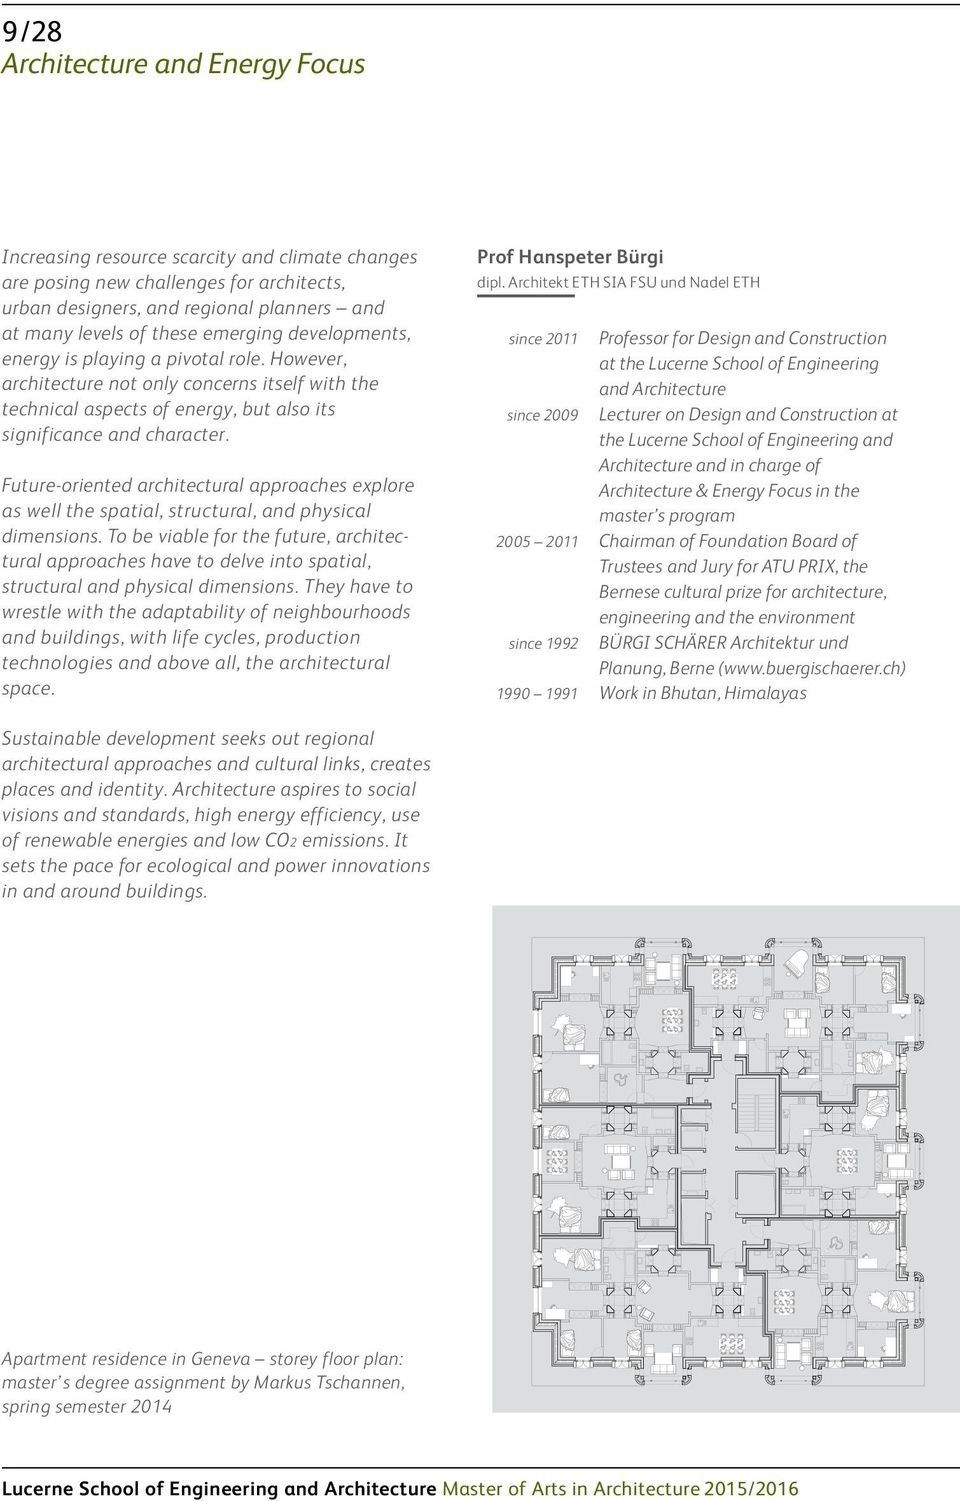 Collage; Einstieg in die Typologie Grundriss Regelgeschoss 1/50 0 Masterthesis Markus Tschannen Aus der Analyse von Wohnikonen entnommene Raumtypen, die zusammengestellt zu neuen Typen führen.